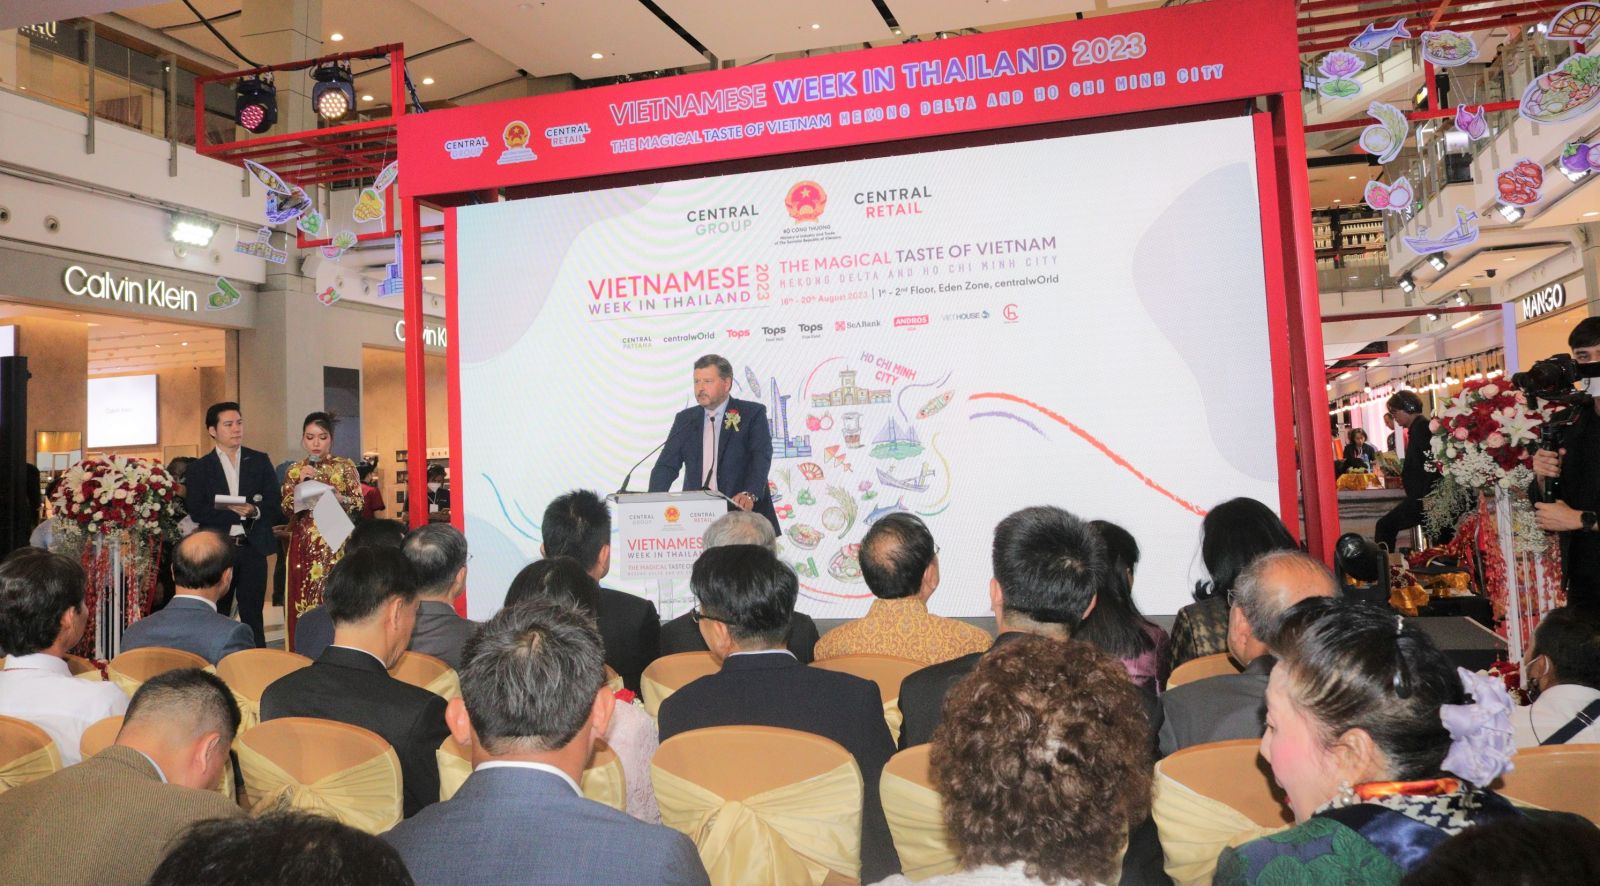 1Ông Olivier Langlet, Tổng Giám đốc Tập đoàn Central Retail tại Việt Nam phát biểu khai mạc sự kiện.jpg